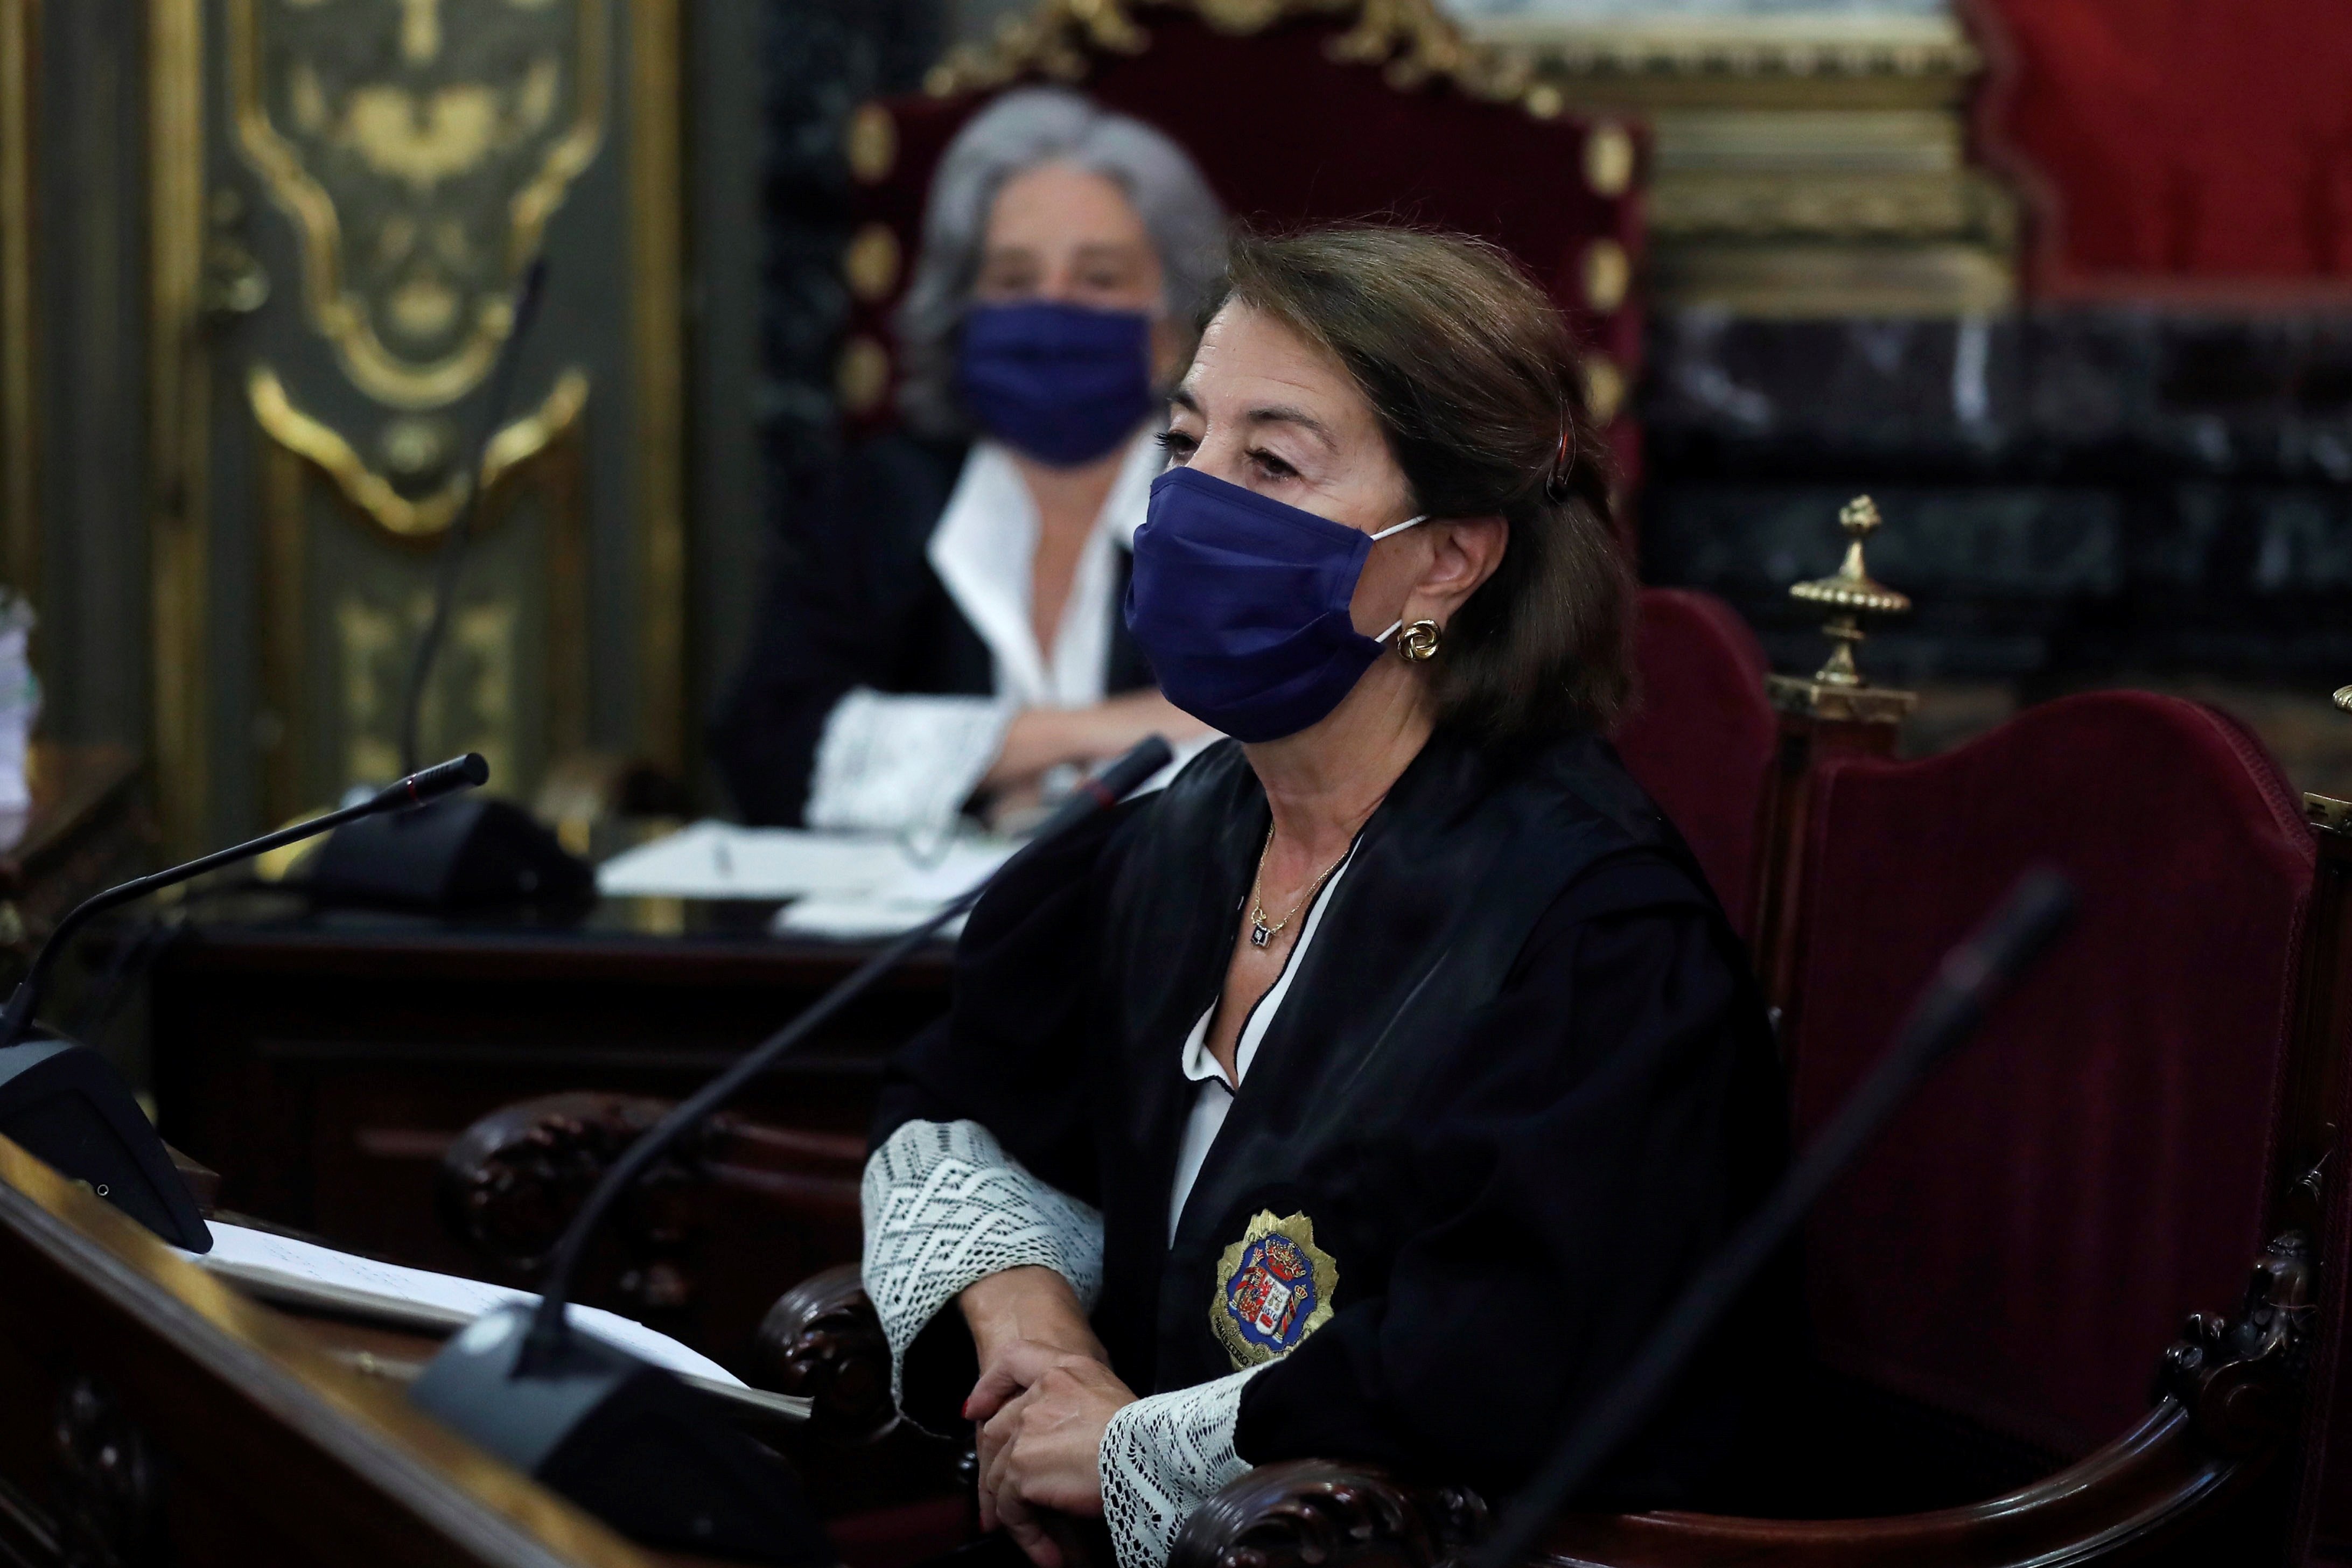 La fiscal Fernández, a Boye: "Estira y adapta las leyes a su conveniencia"